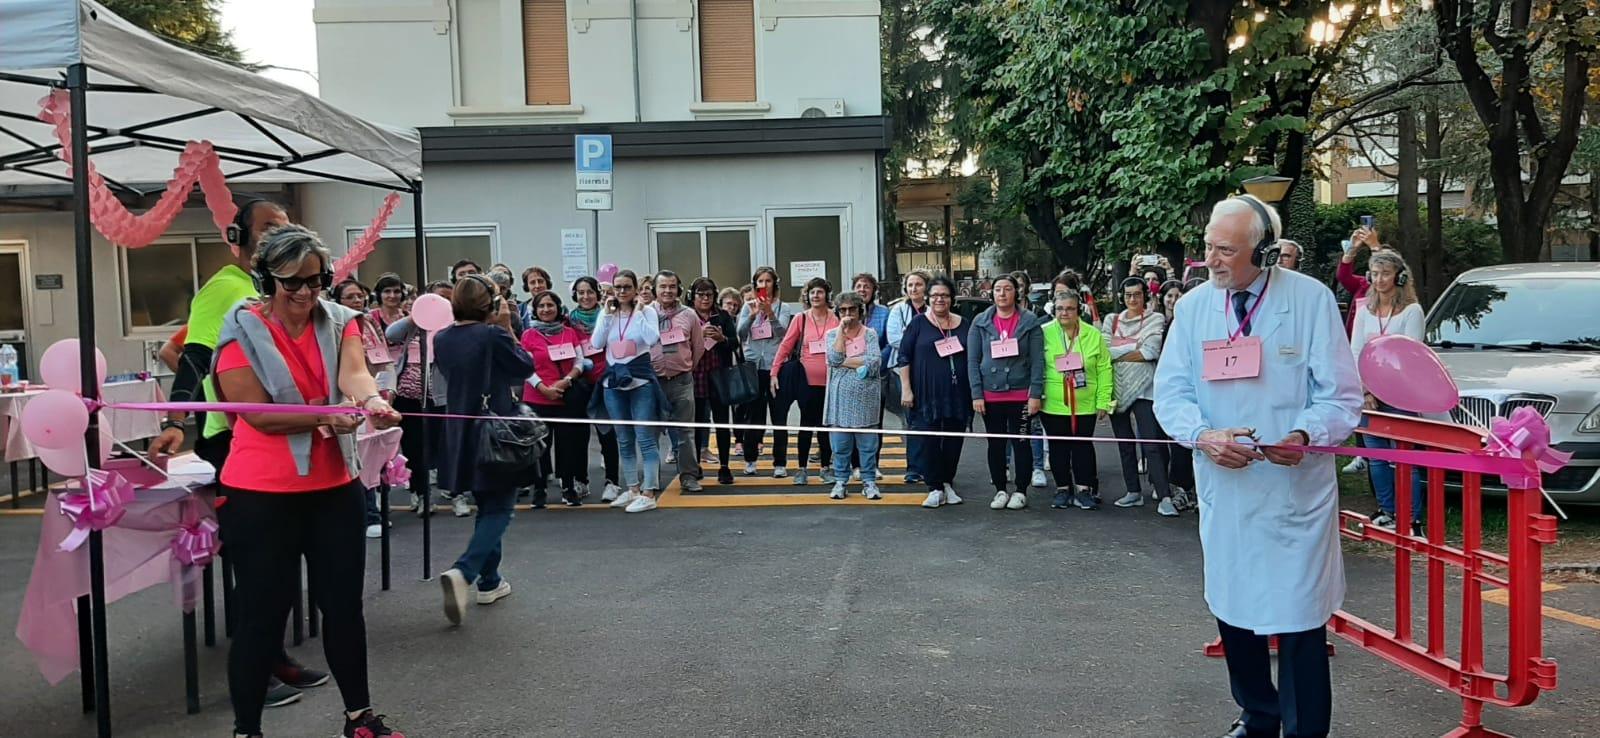 Ospedale Saronno, un successo di sorrisi e partecipazione la prima edizione della Pink walk